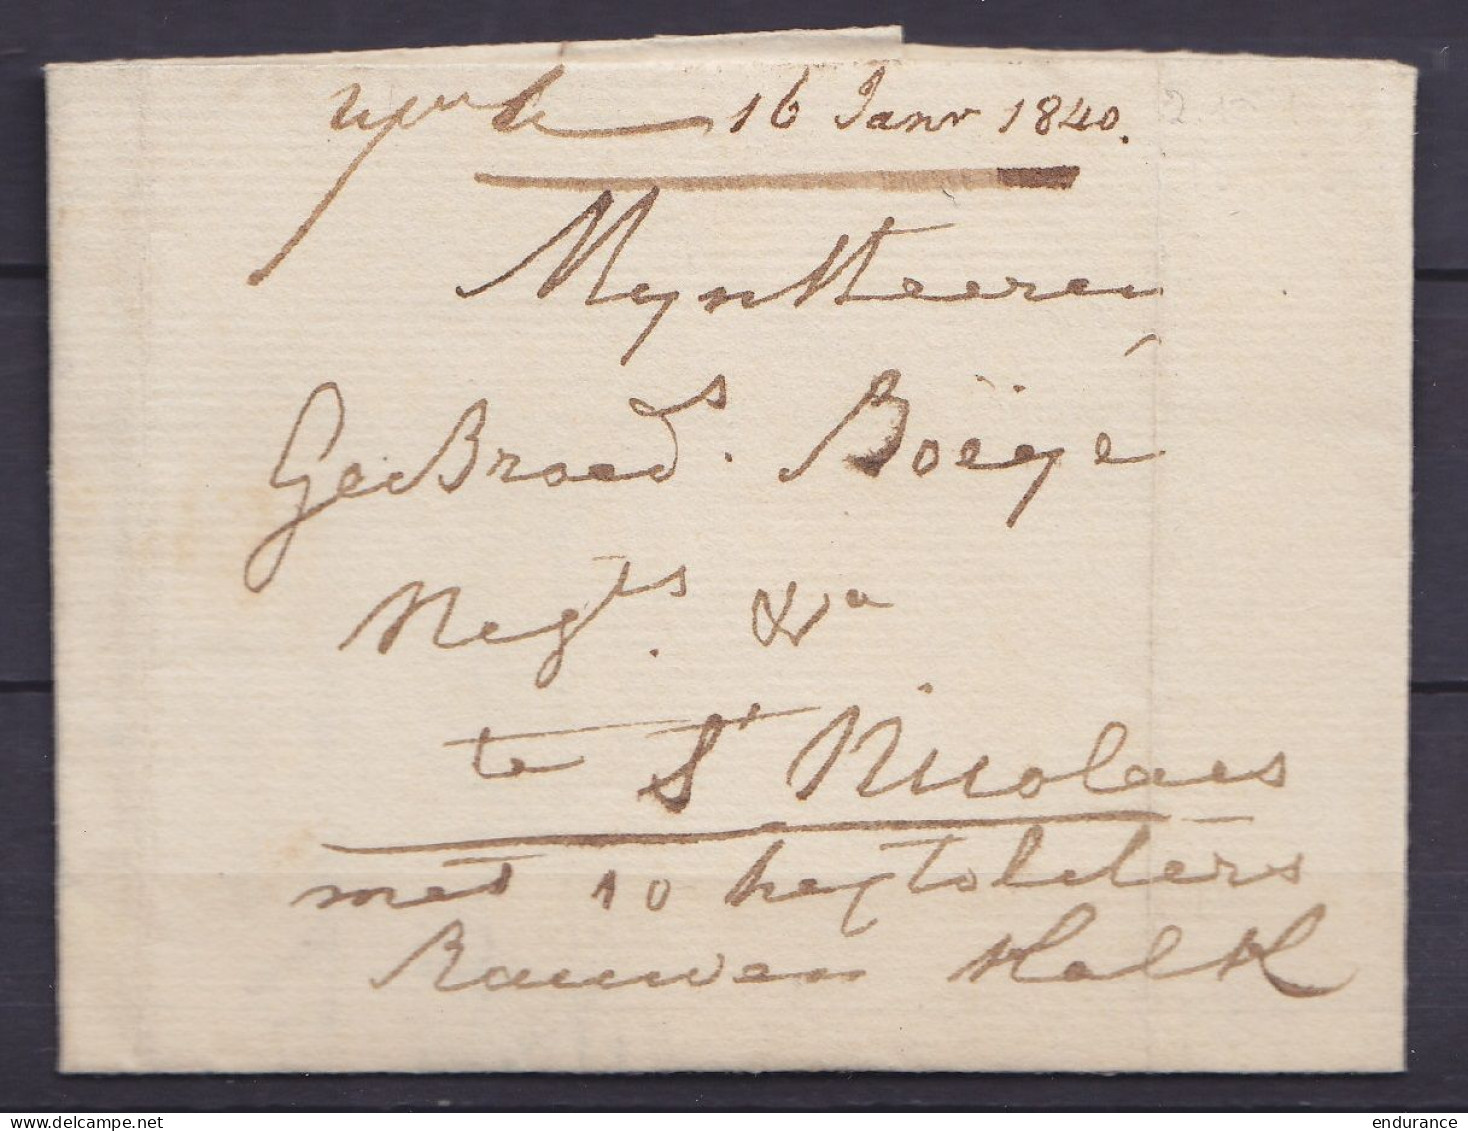 L. Datée 2 Décembre 1839 De TEMSCHE (Tamise) Pour ST-NICOLAS - Man. "met 10 … ?" - 1830-1849 (Belgica Independiente)